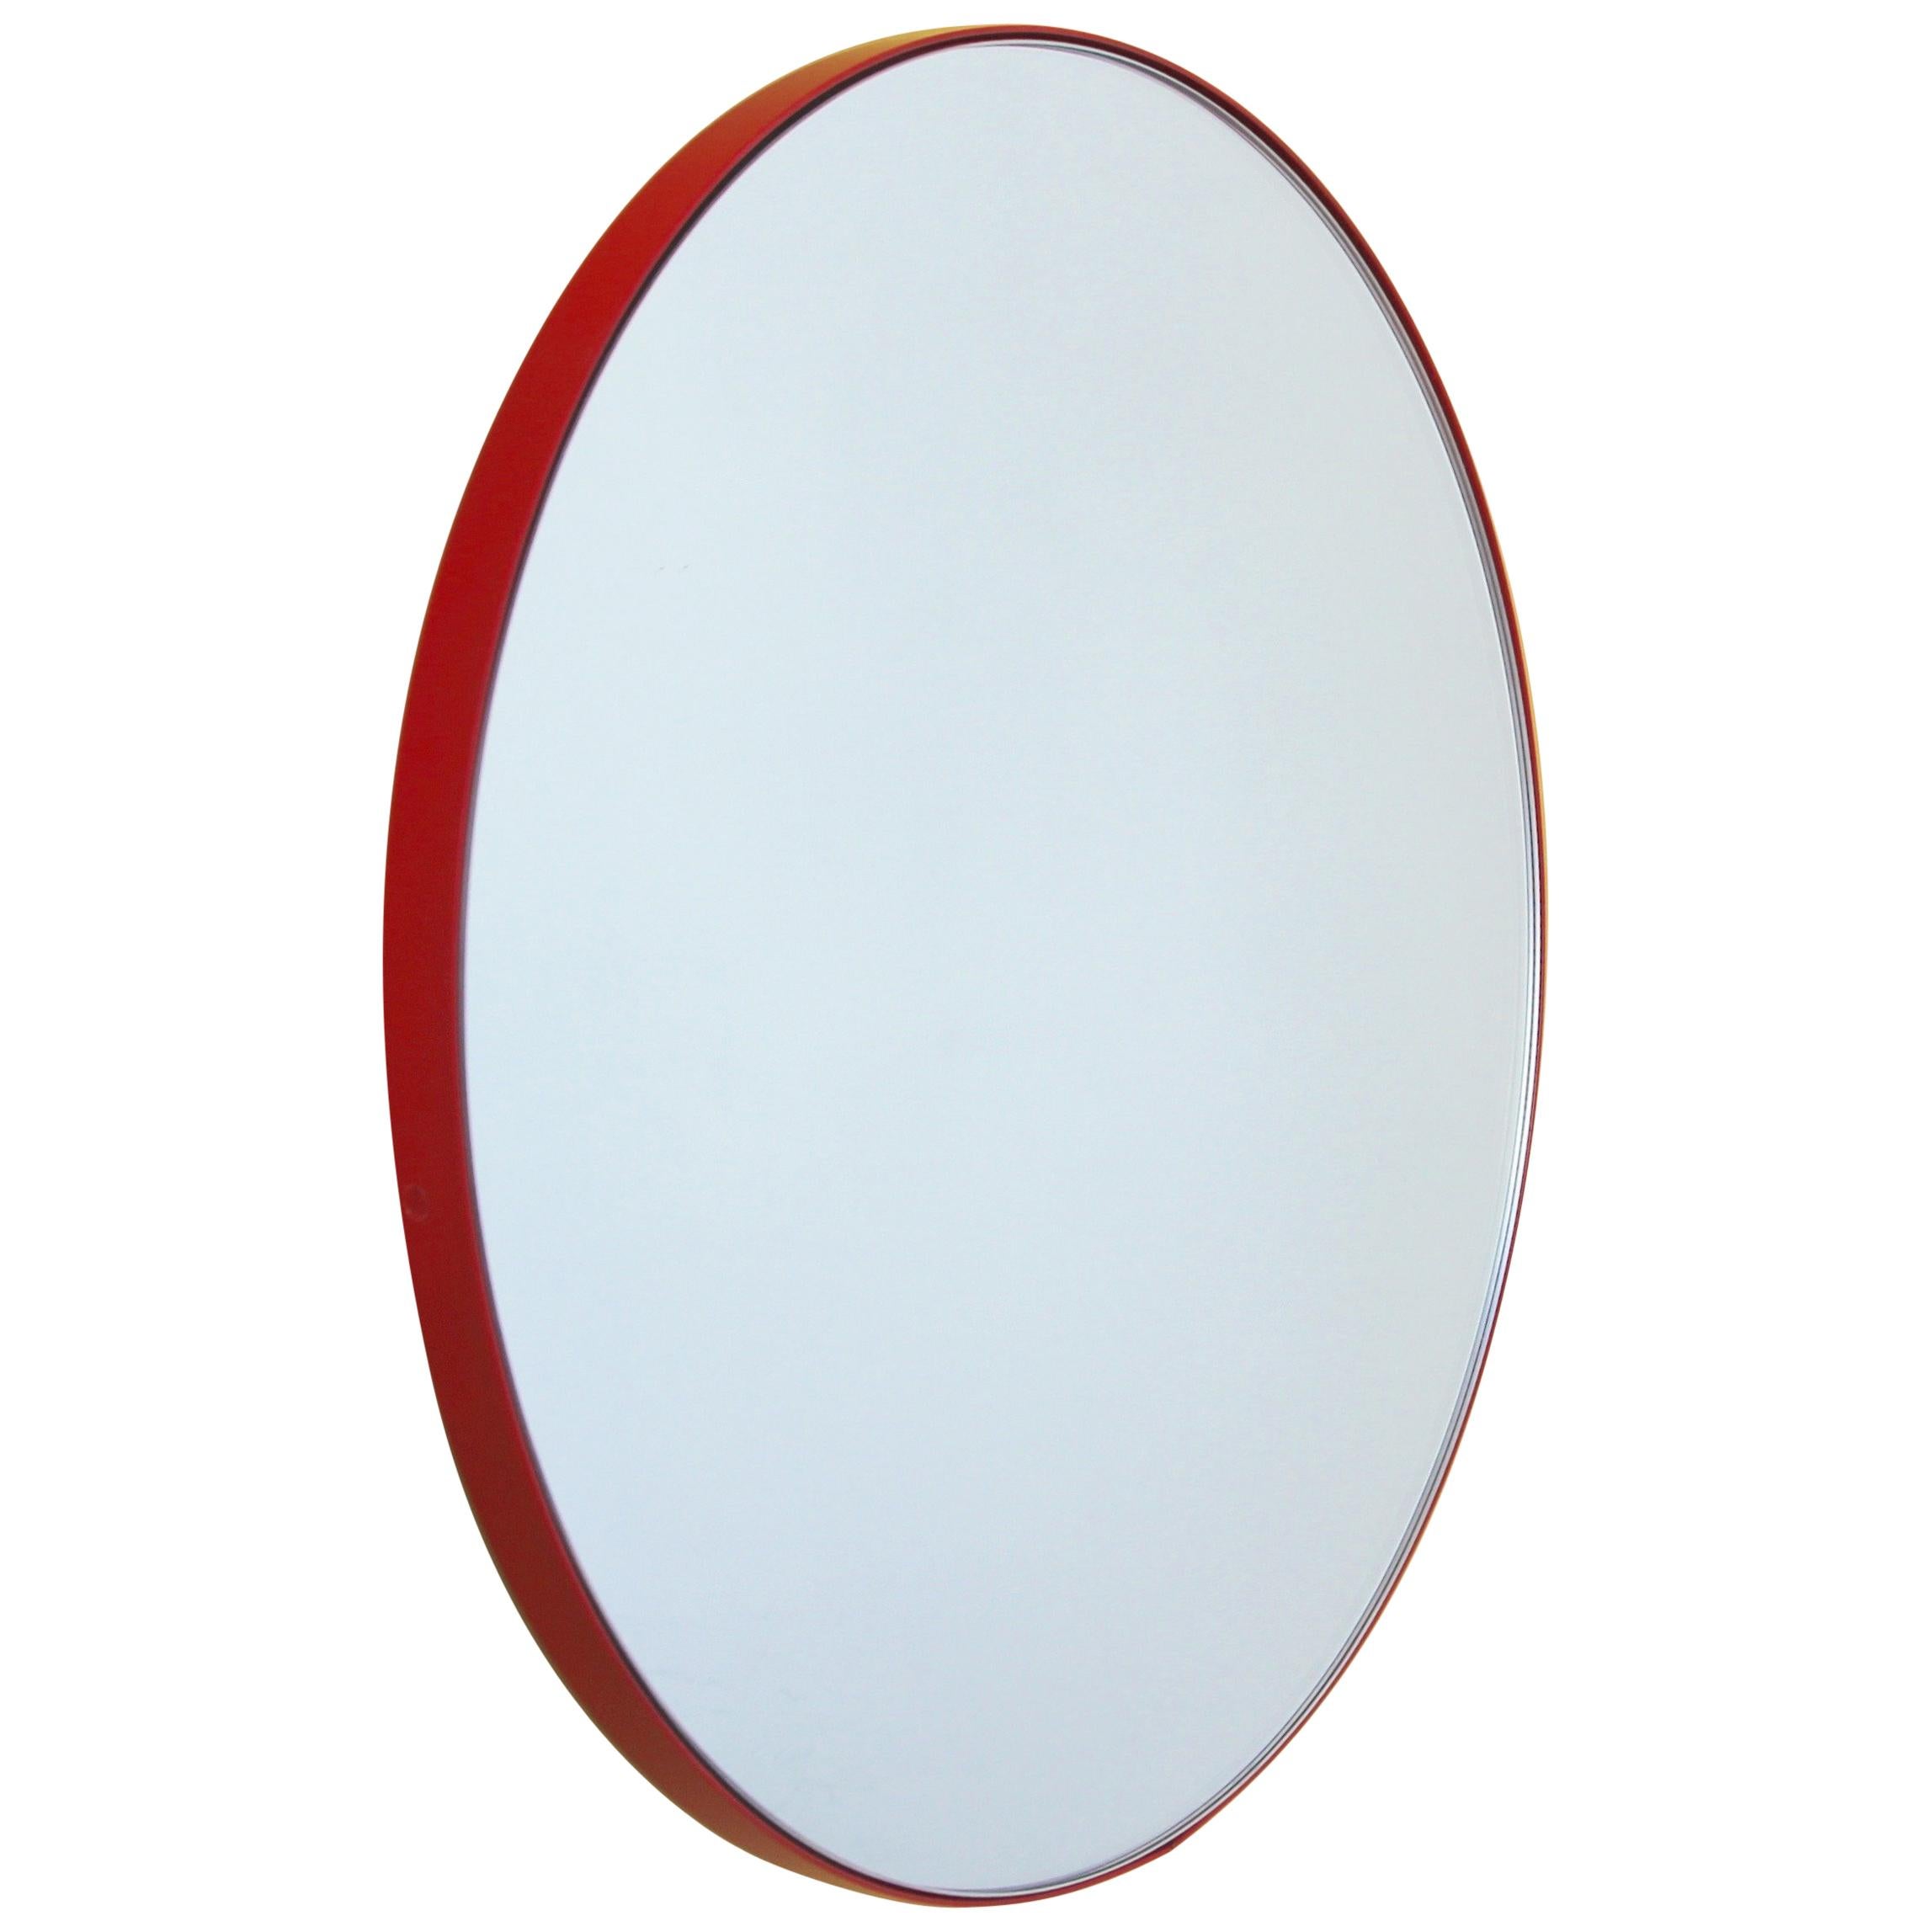 Orbis Runder Contemporary Handcrafted Spiegel mit rotem Rahmen, groß